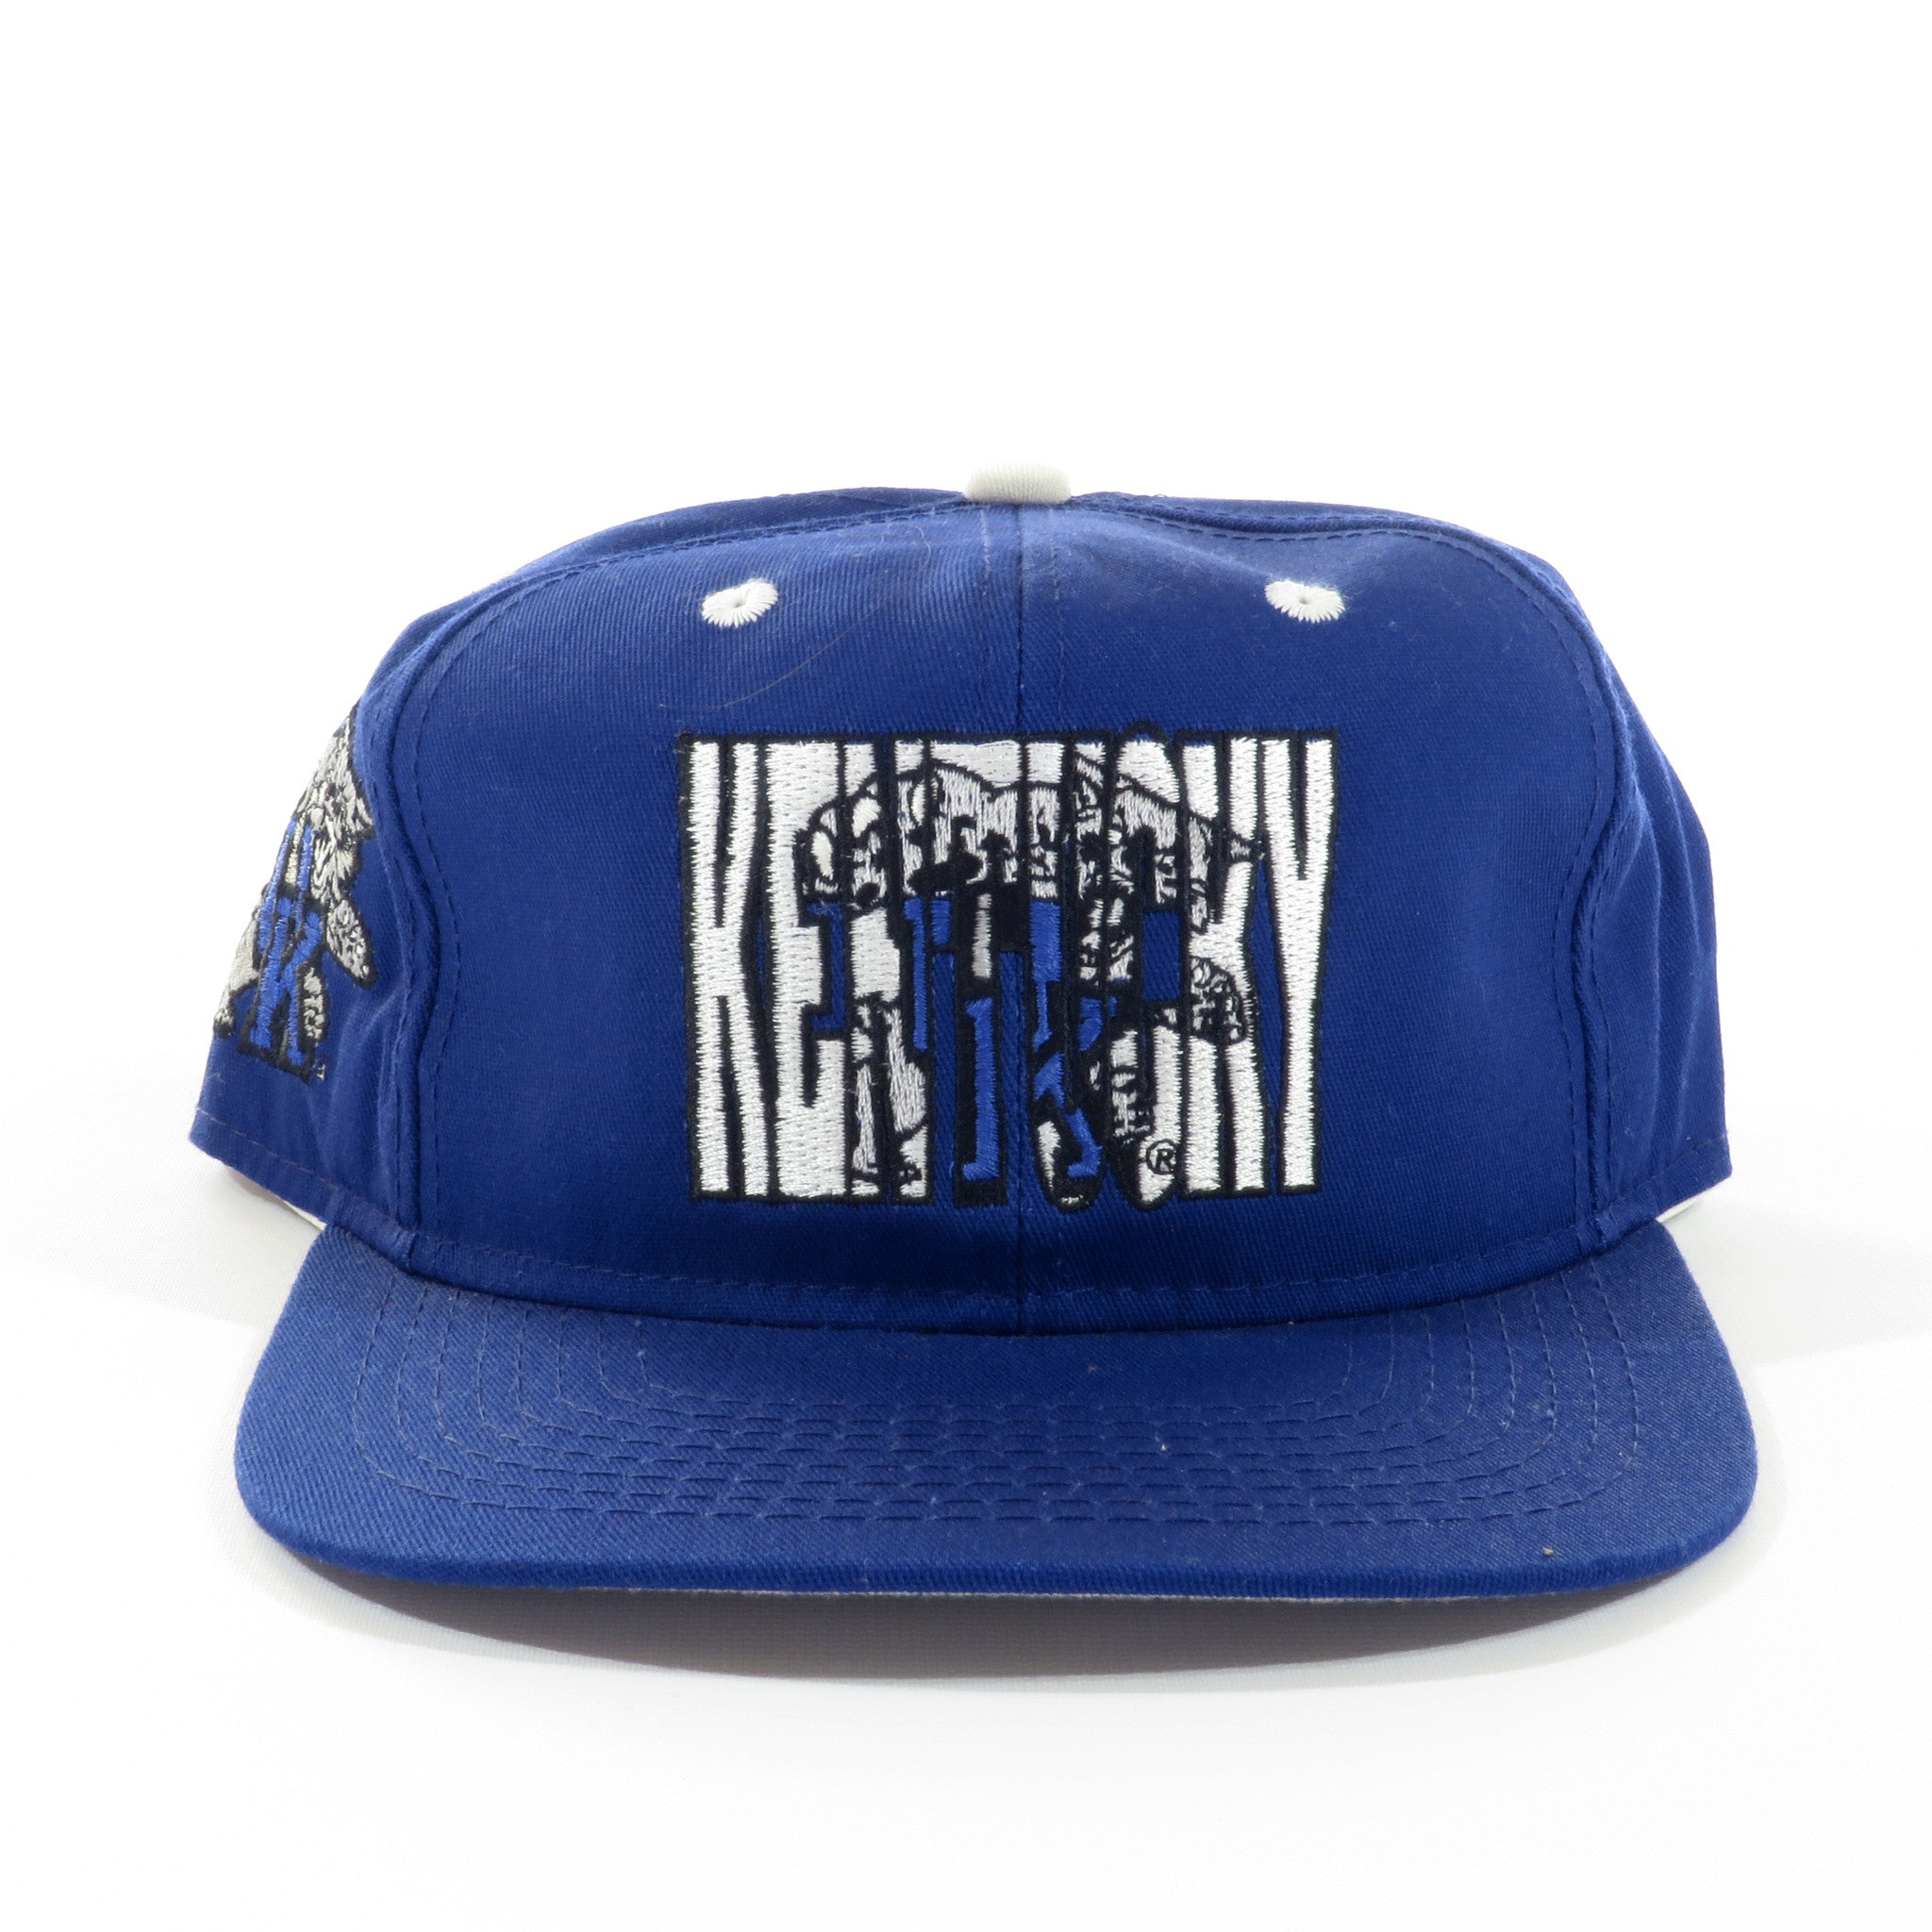 Kentucky Wildcats Snapback Hat